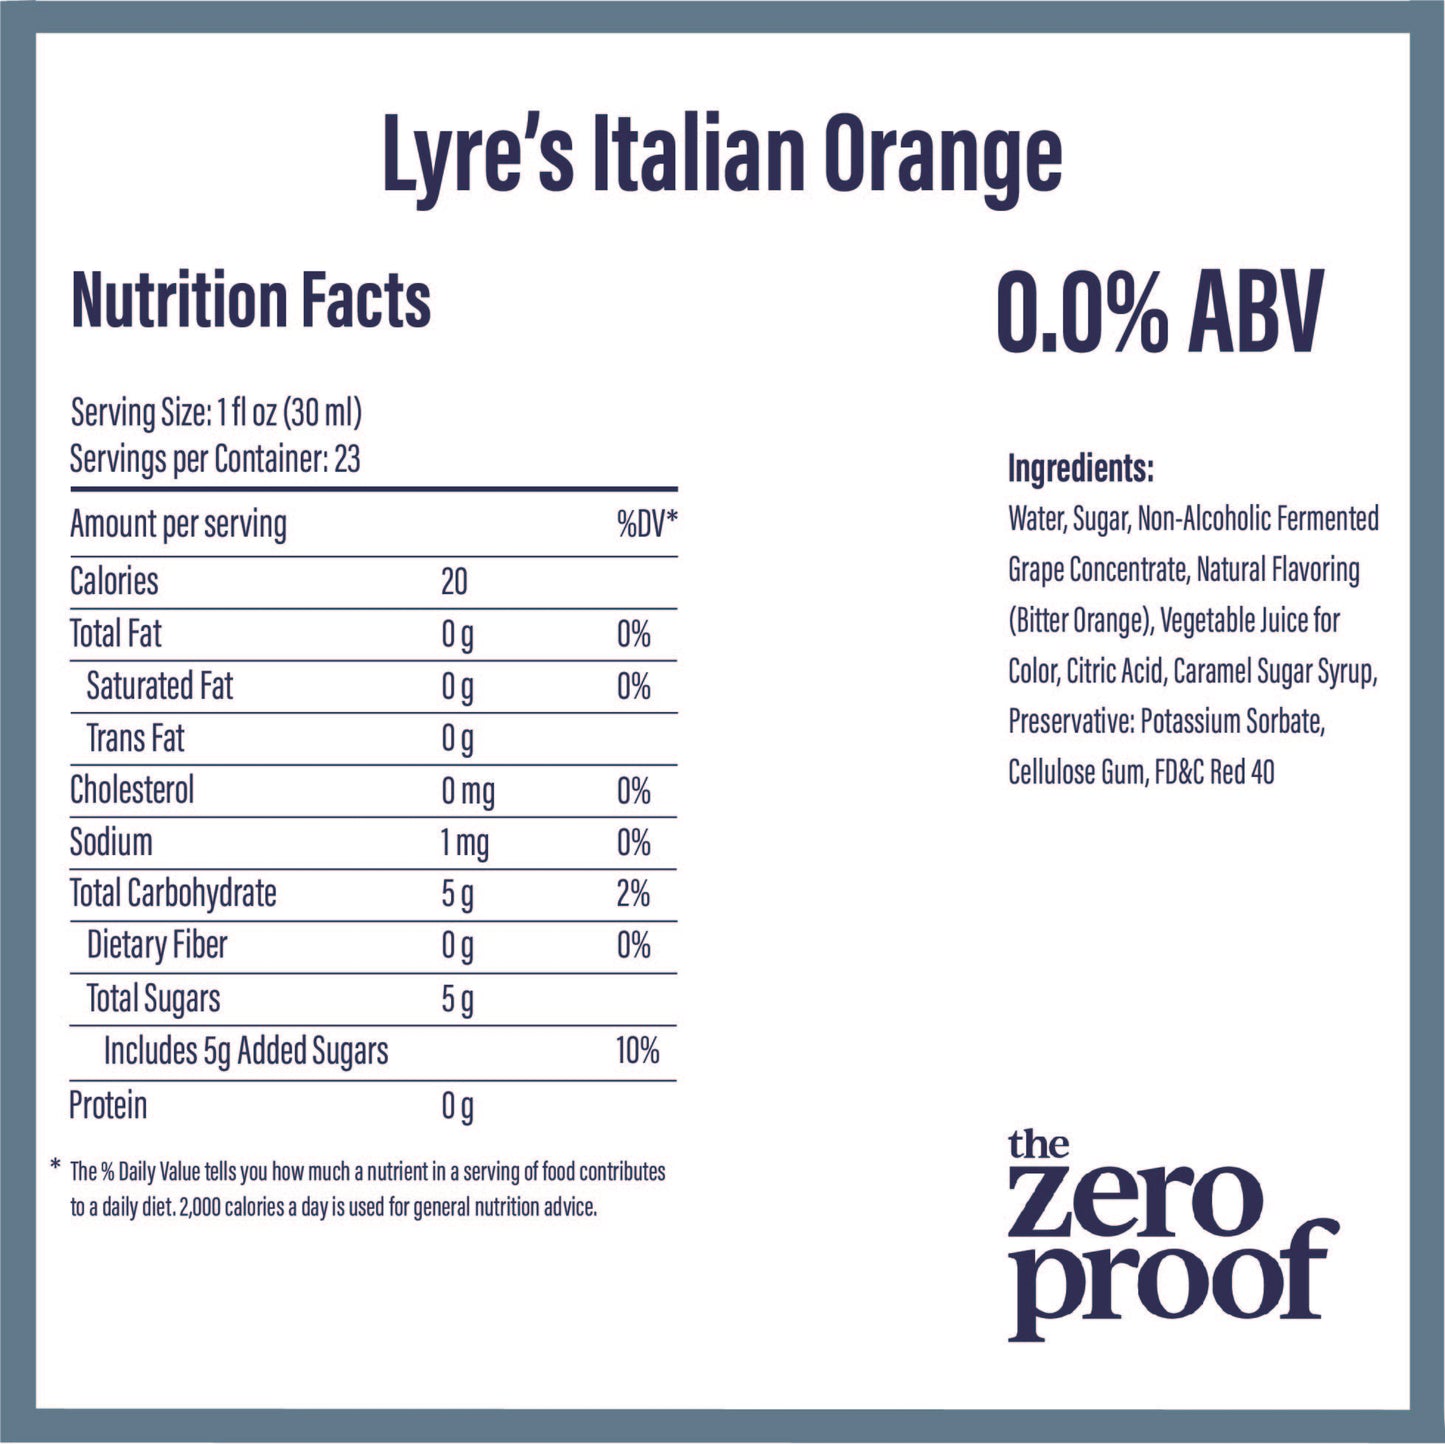 Lyre’s Italian Orange